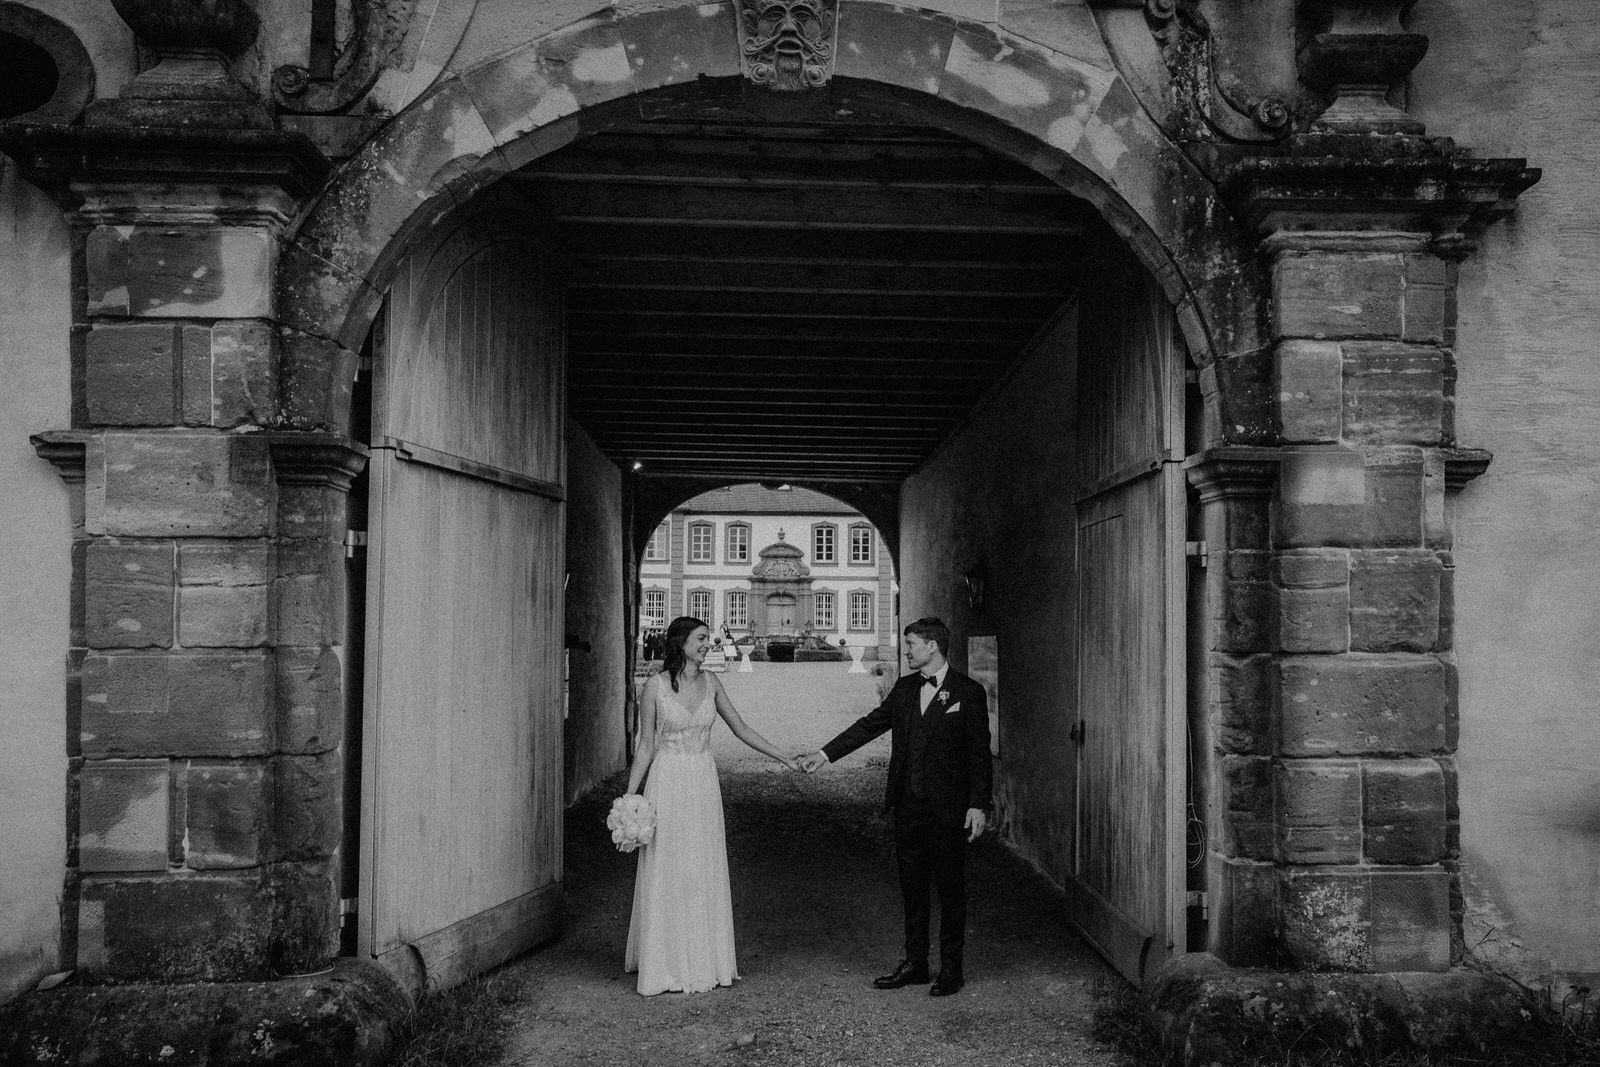 Hochzeit im Schloss Münchweiler Hochzeitslocation im Saarland - Hochzeitsfotograf Saarland & Pfalz Andreas Heu